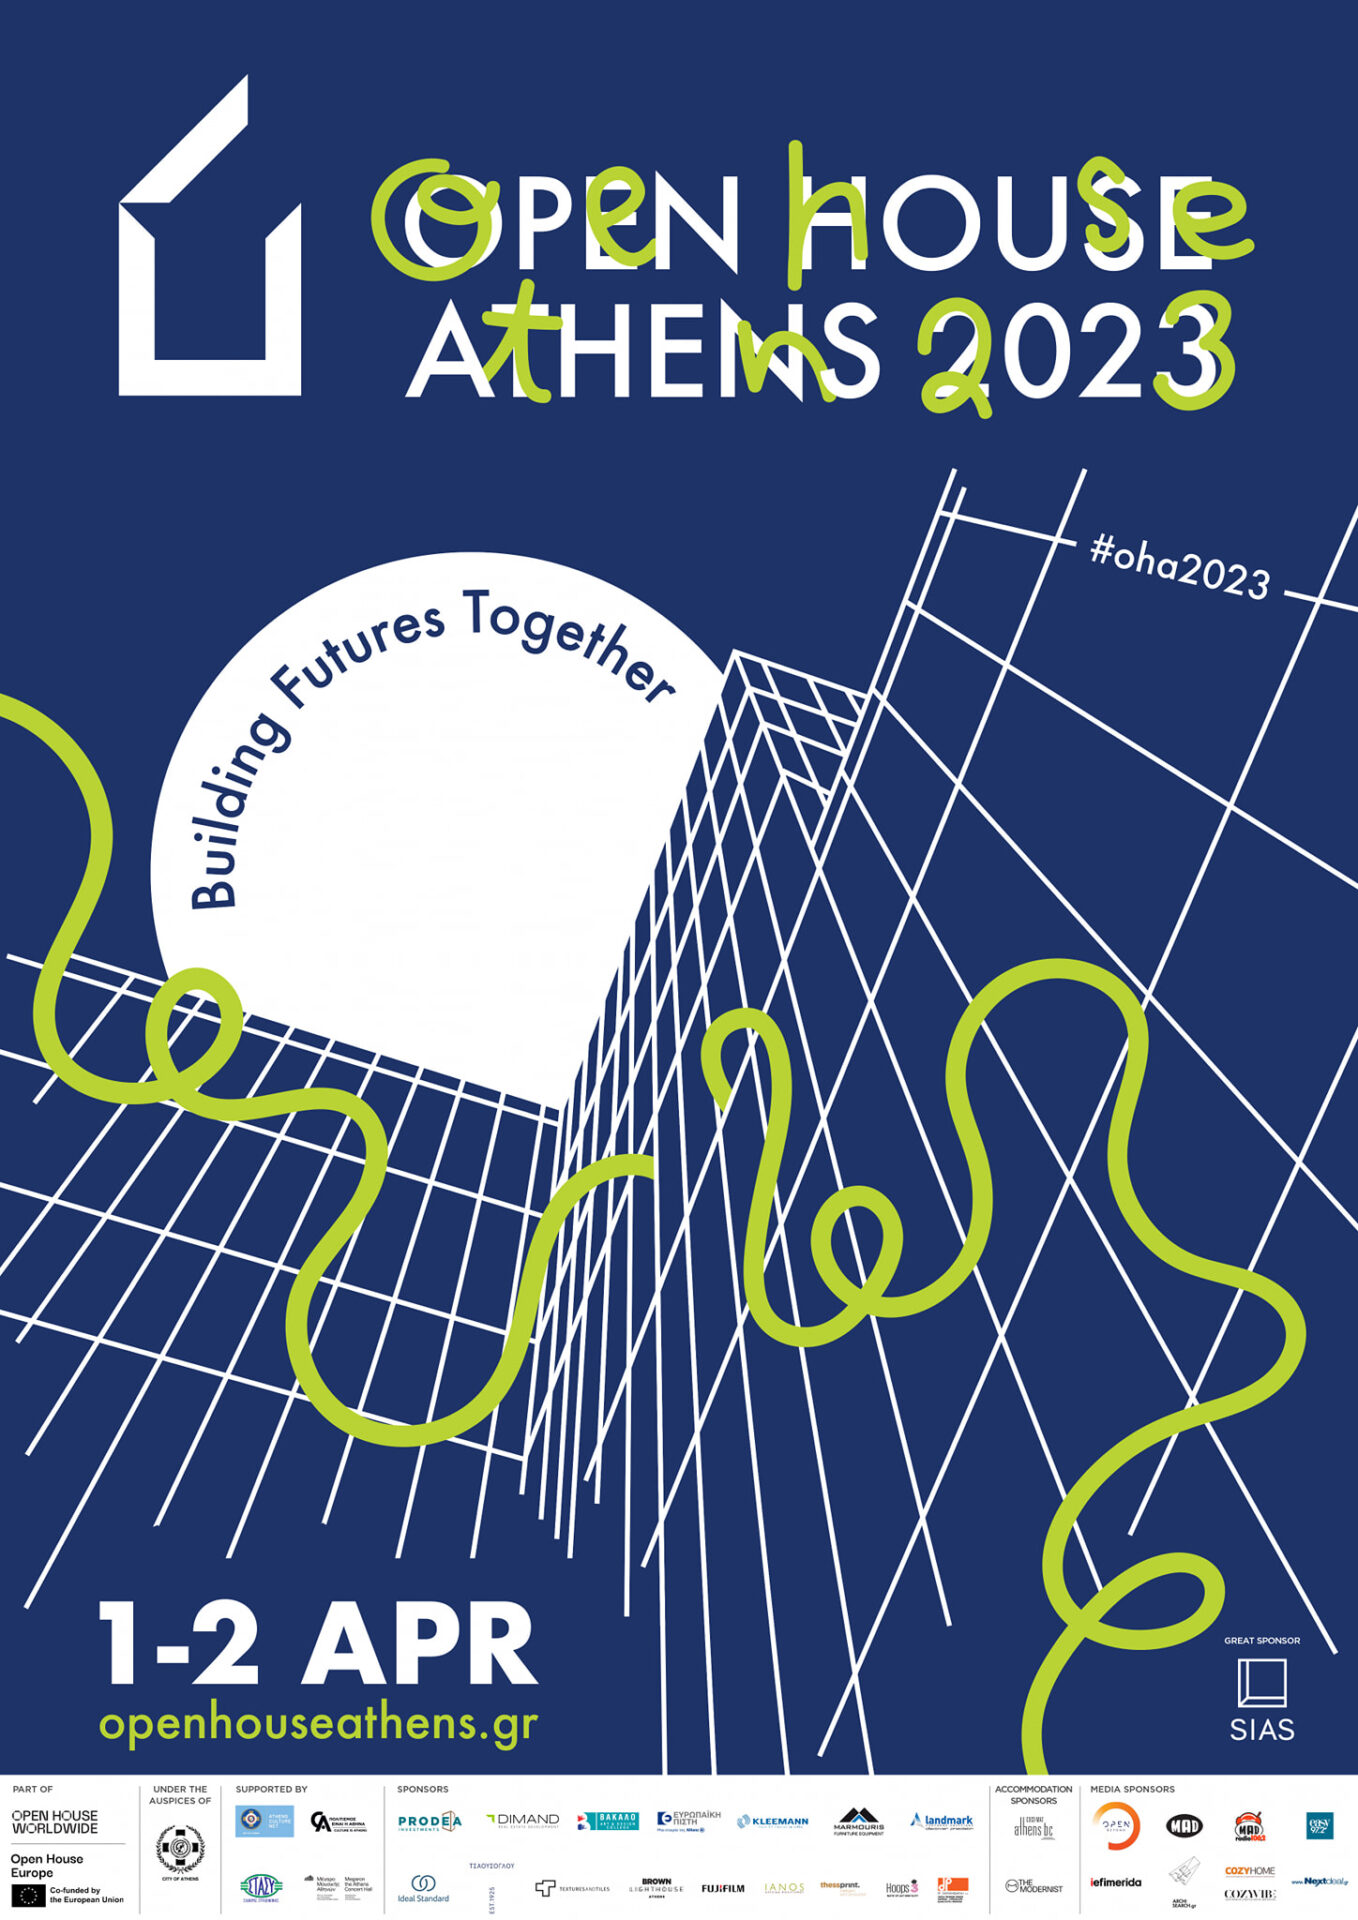 Η επίσημη αφίσα του OPEN HOUSE Athens 2023 Design: Chloe Dargonakis Η αφίσα της εκδήλωσης προέκυψε μέσα από τον διαγωνισμό DESIGN THE POSTER, που συνδιοργανώθηκε με το Vakalo Art & Design College